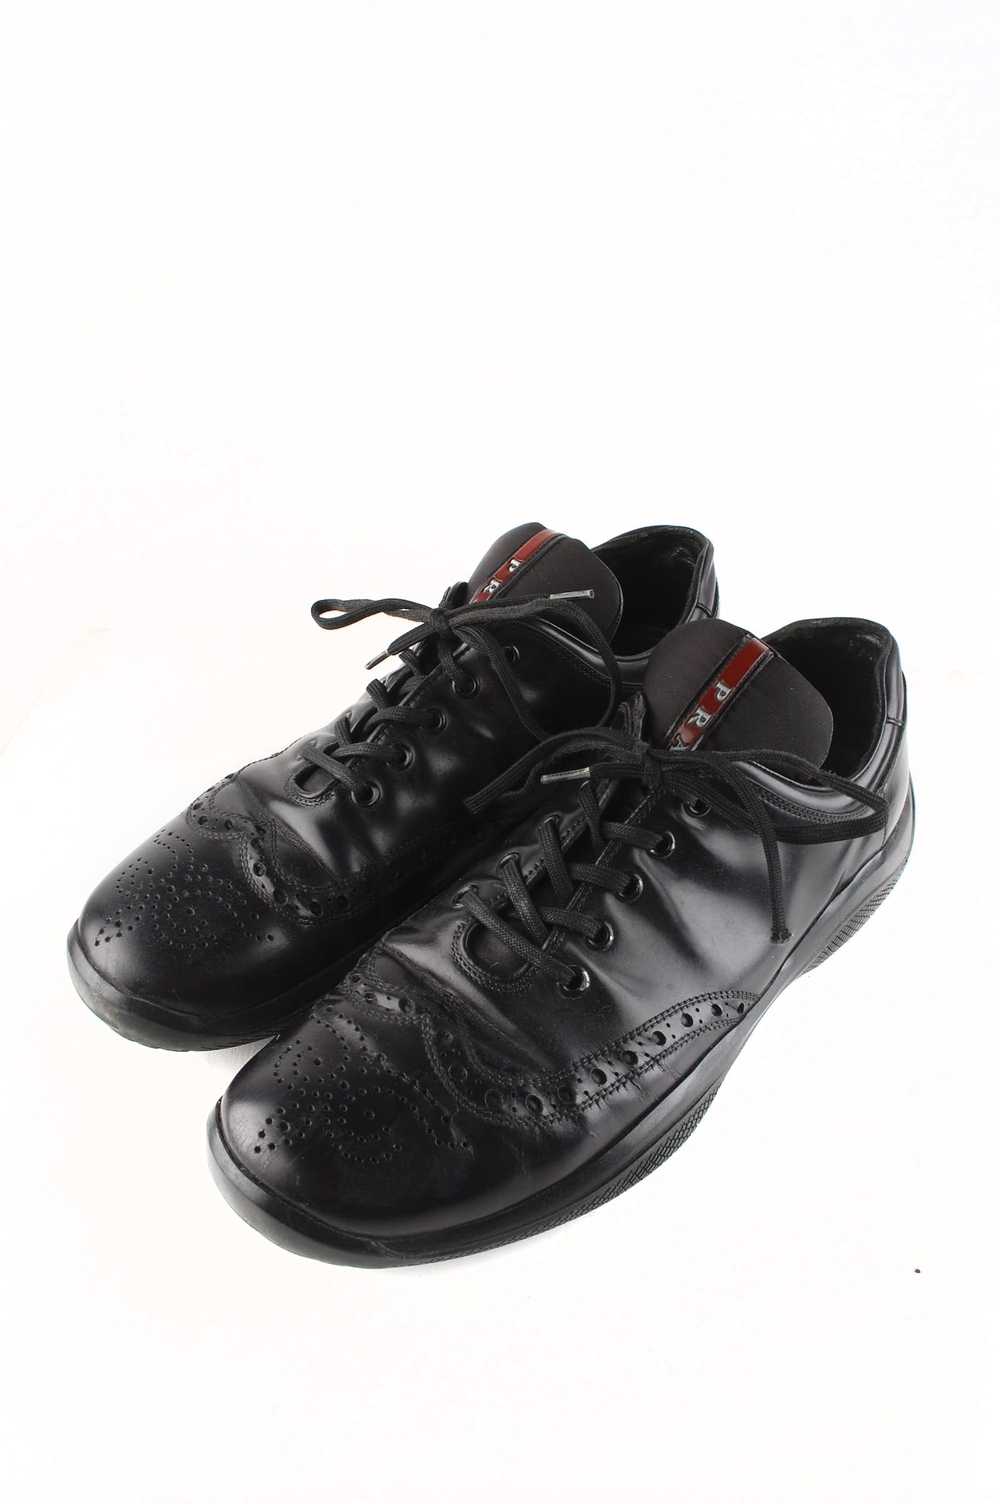 Prada Original Prada Leather Oxford Shoes sz.42EU… - image 1